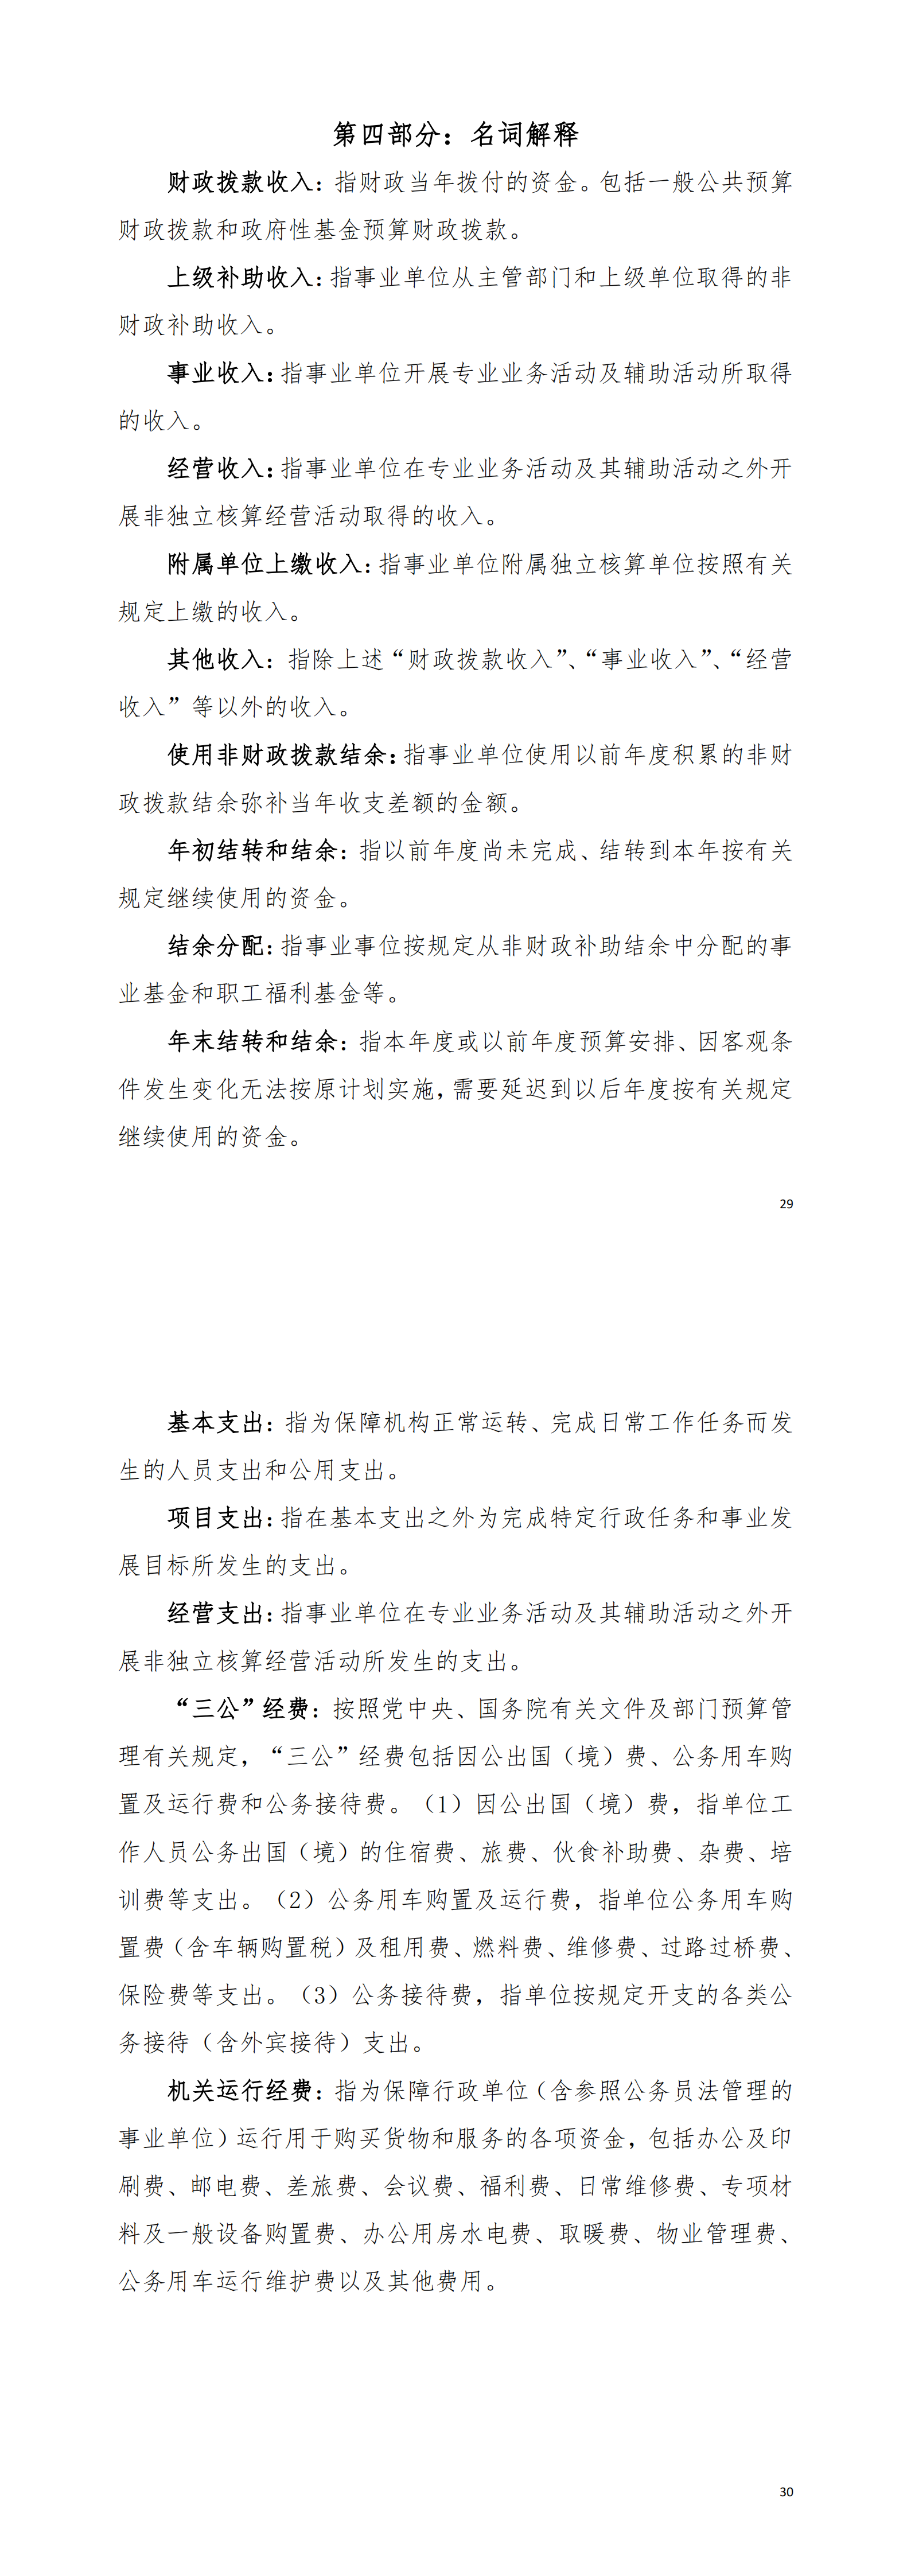 2021年阳江高新技术产业开发区安全生产监督管理局部门决算_02.png